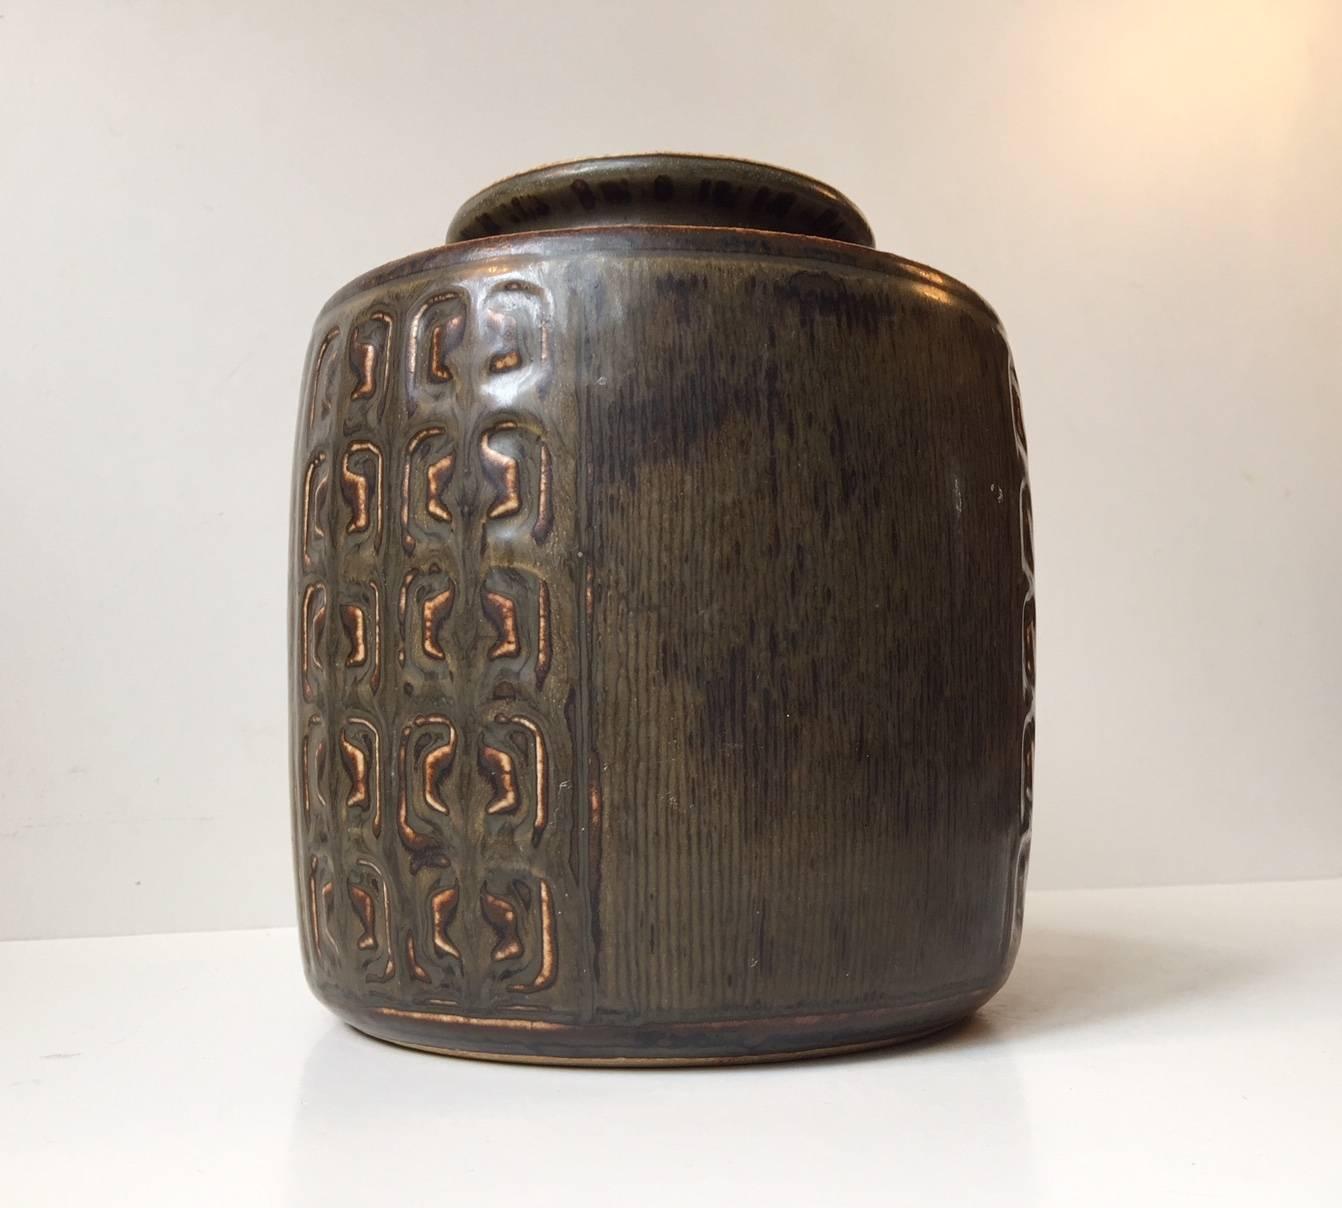 Glazed Danish Modern Stoneware Vase by Valdemar Petersen for Bing & Grondahl, 1960s